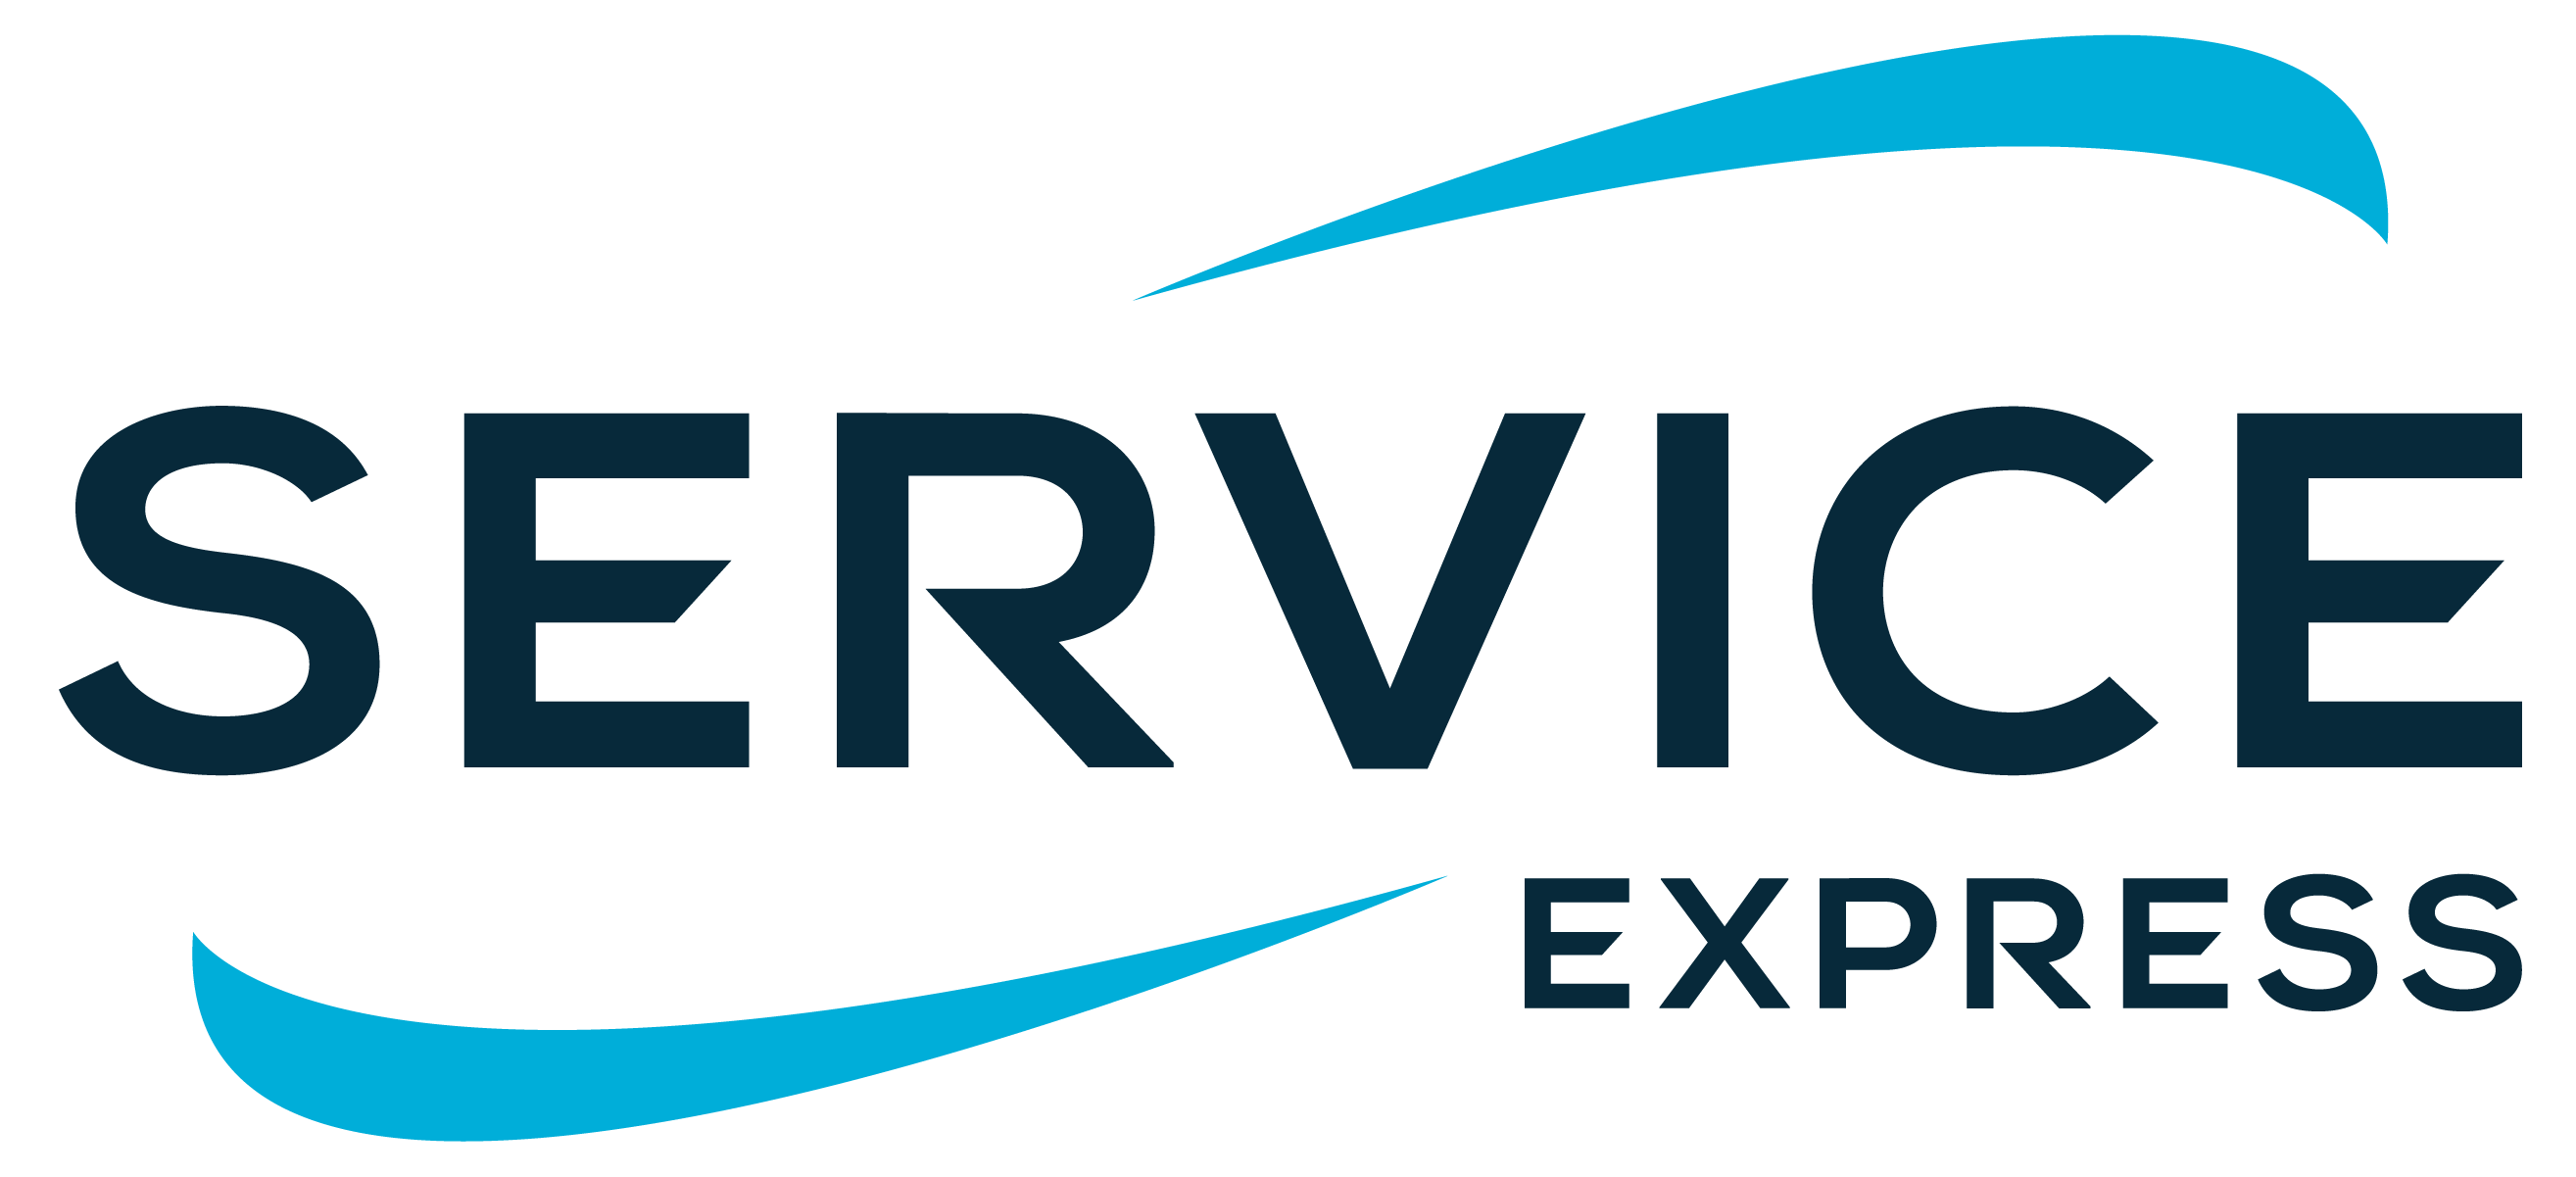 Service Express Company Logo